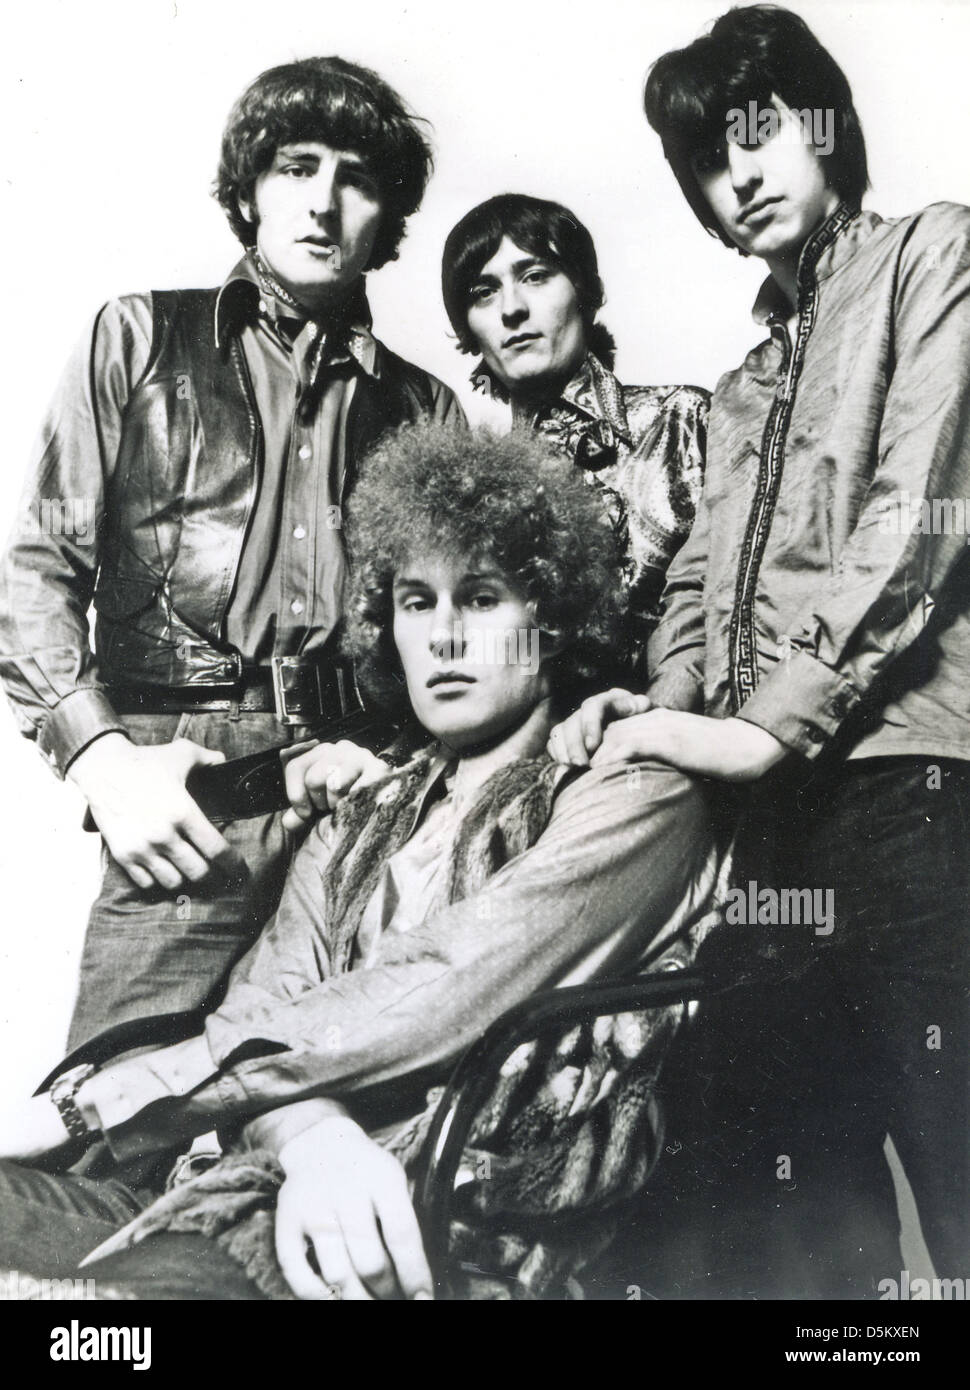 Dieci anni dopo la foto promozionale del Regno Unito gruppo Blues-Rock circa 1968 Foto Stock